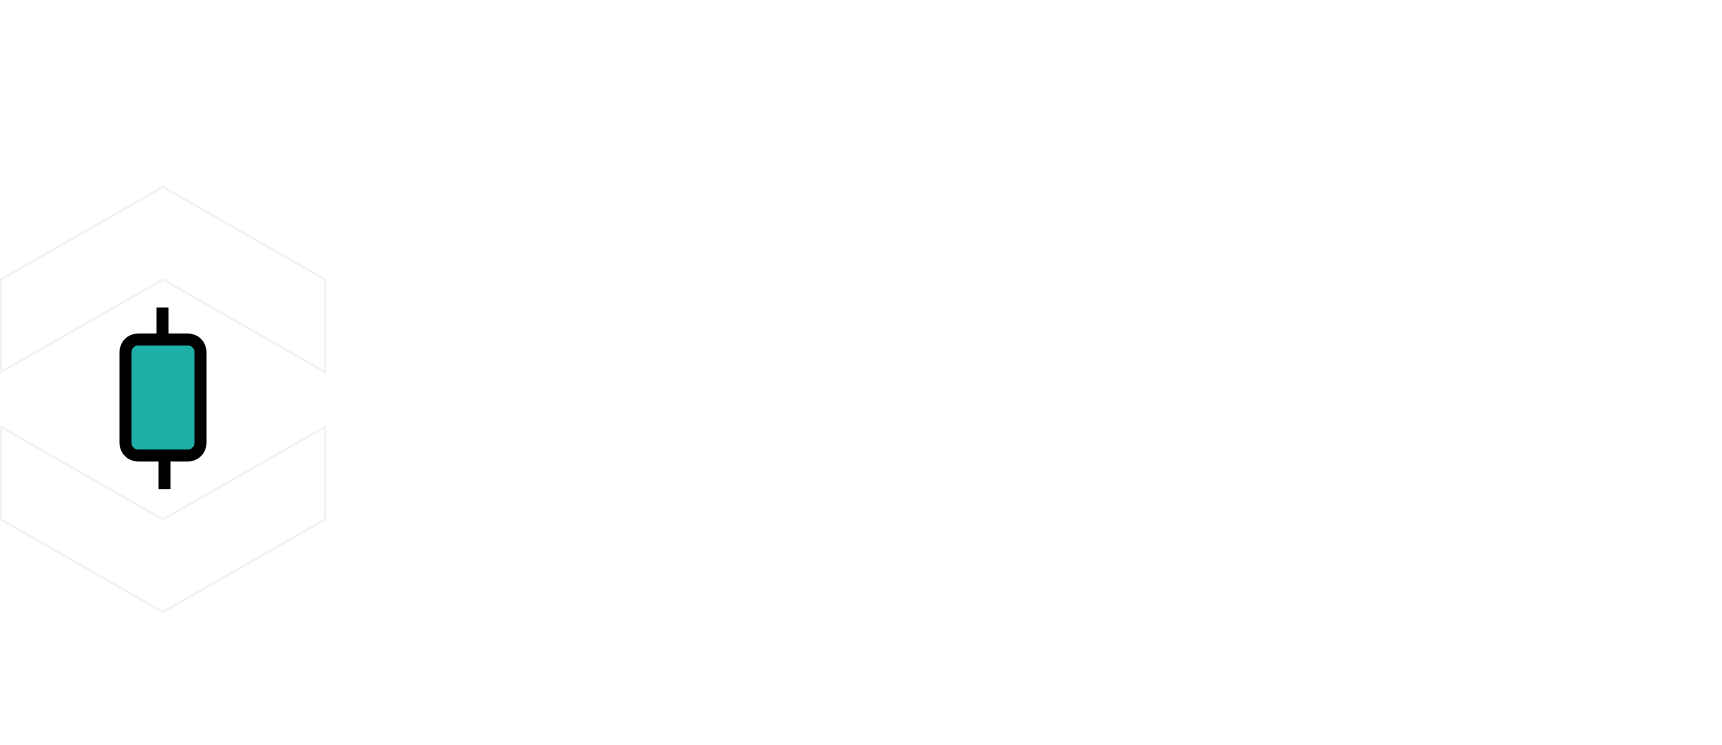 RevCan.co.uk Logo - Light BW